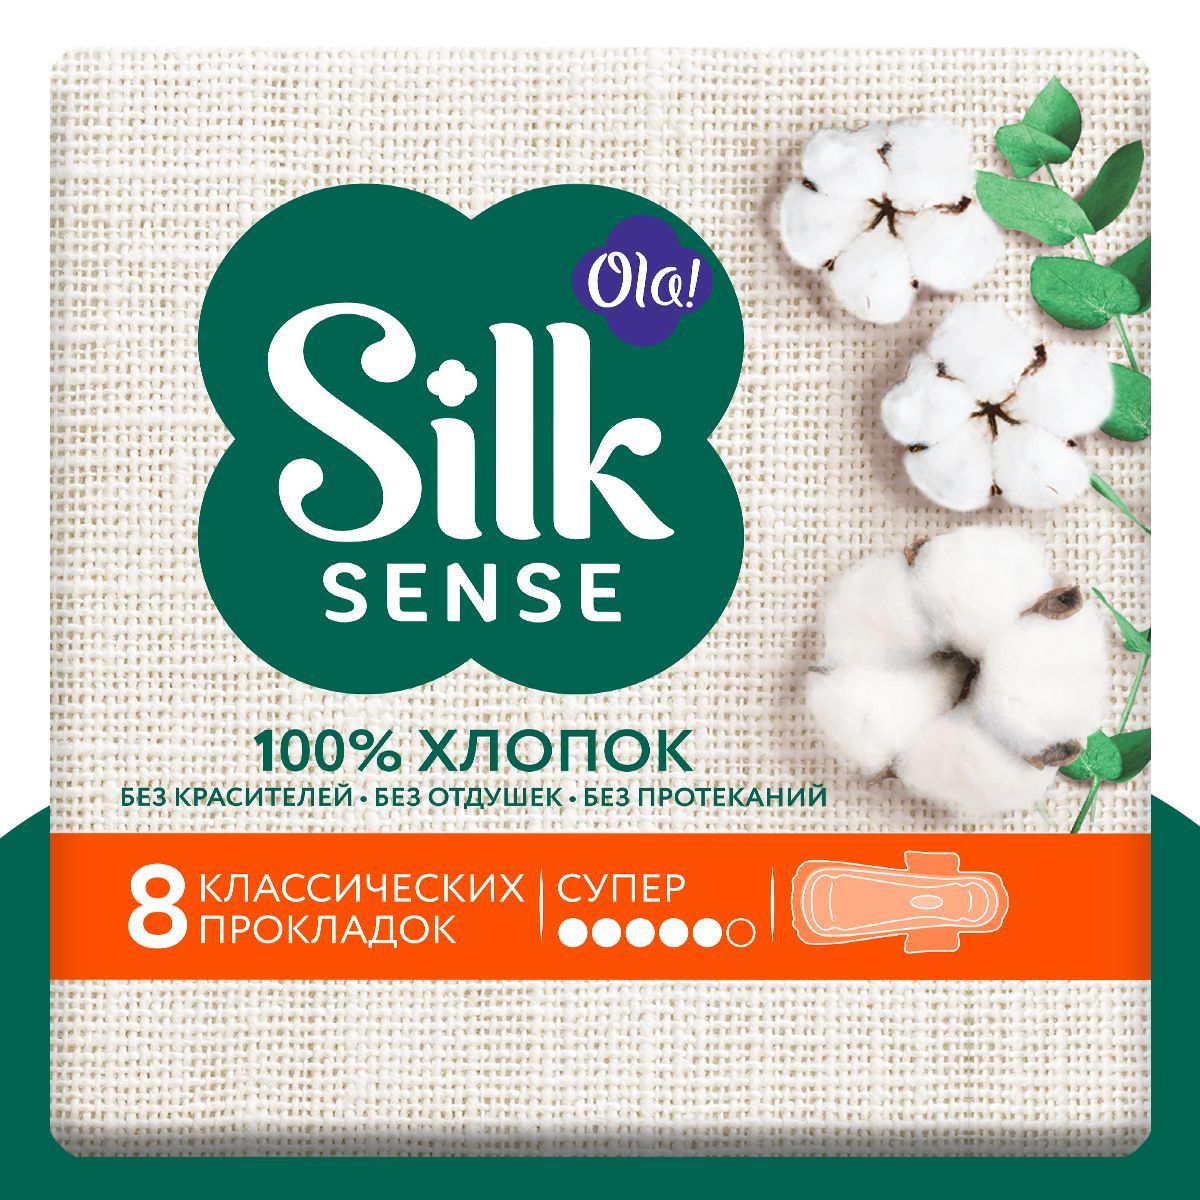 Прокладки женские Ola! Silk Sense Супер натуральные с хлопковой поверхностью 8 шт - фото 1